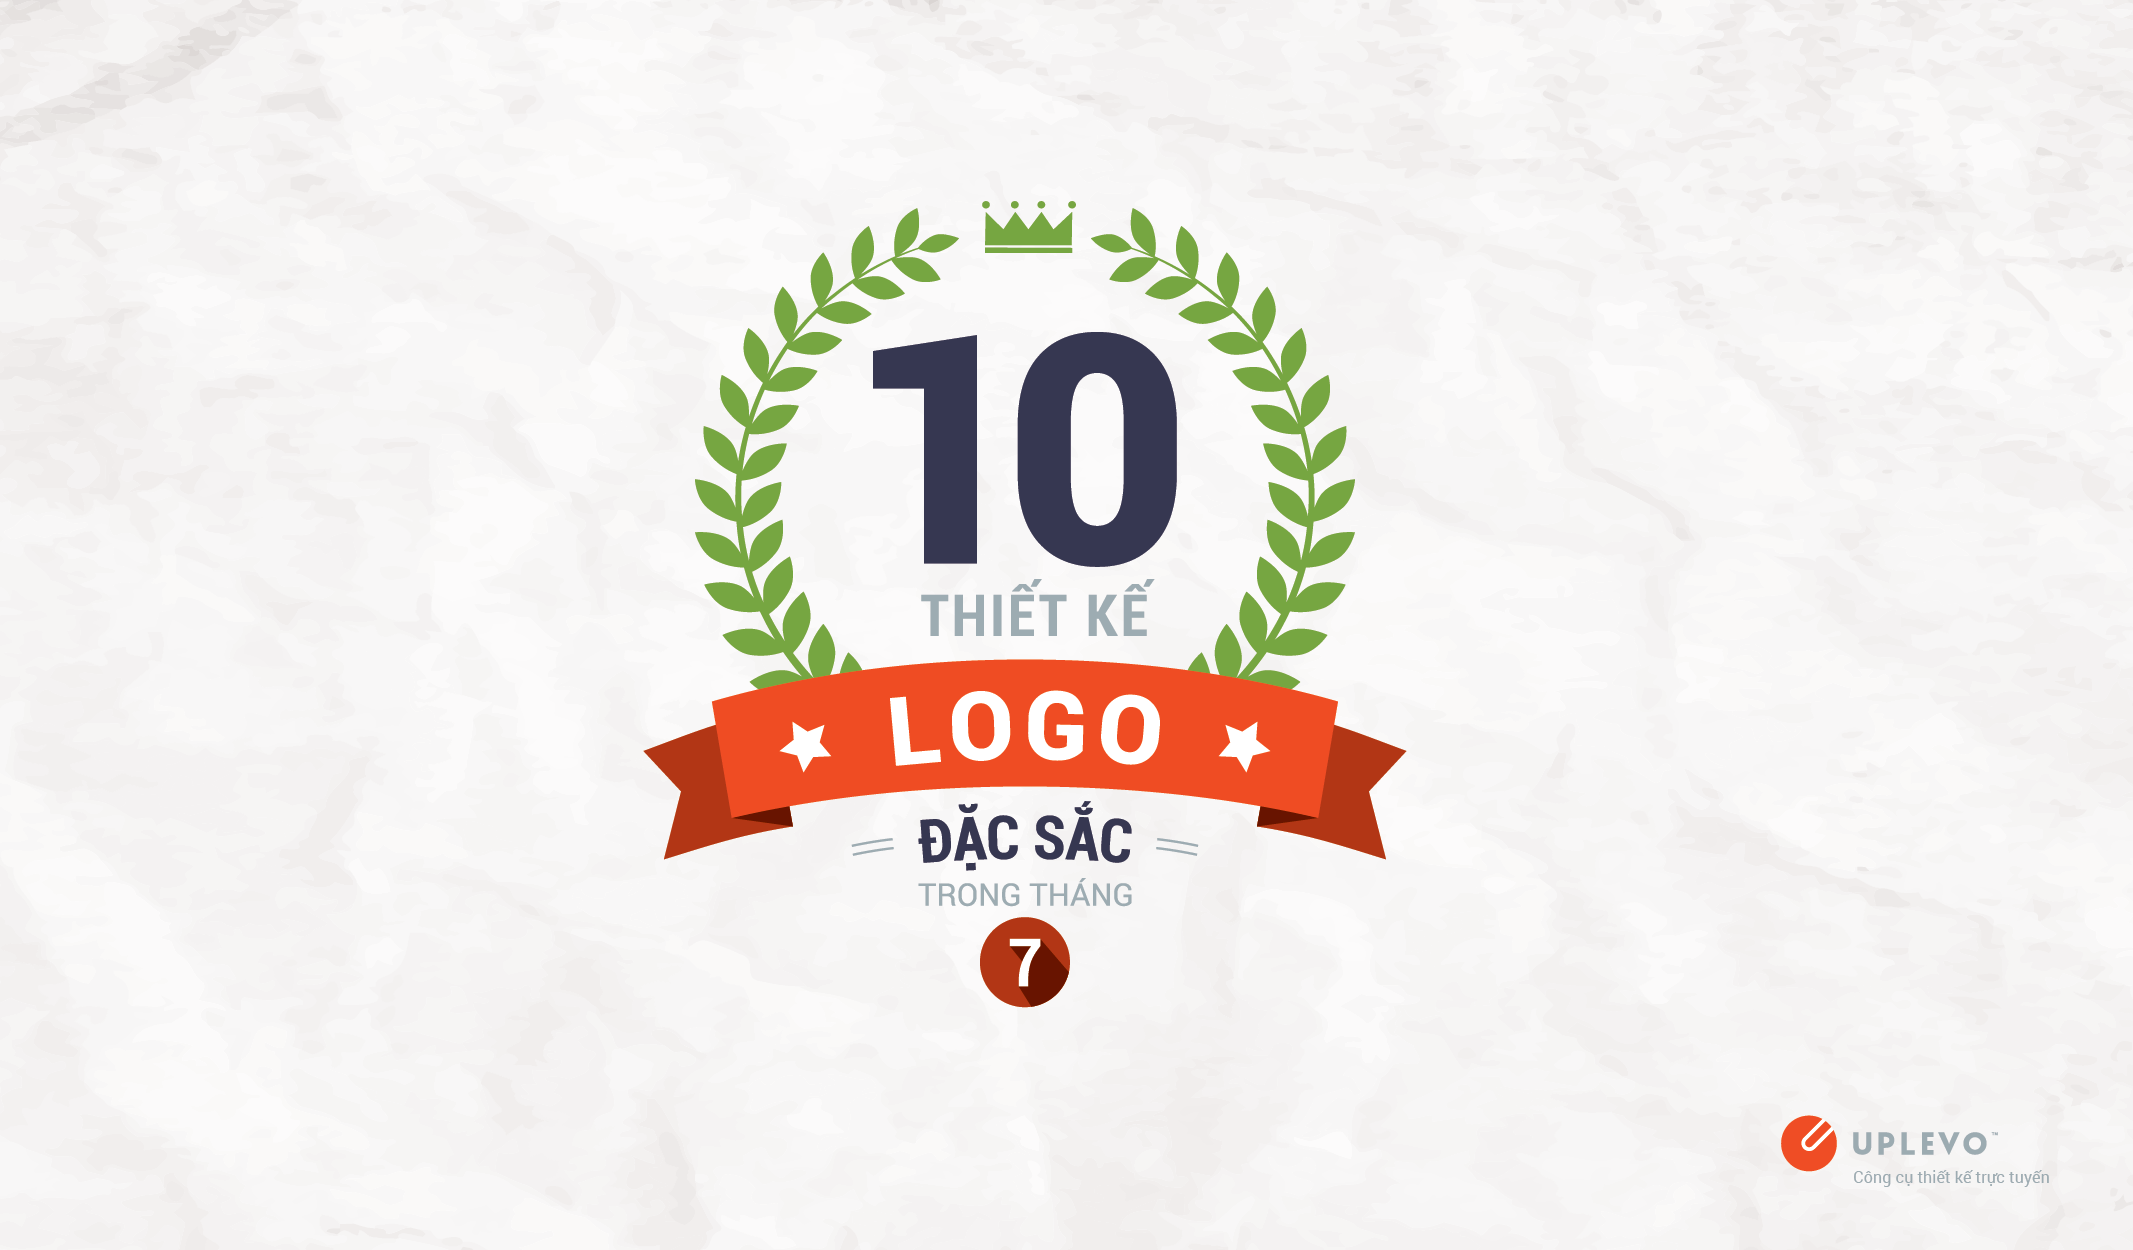 10 thiết kế logo đặc sắc trong tháng 7